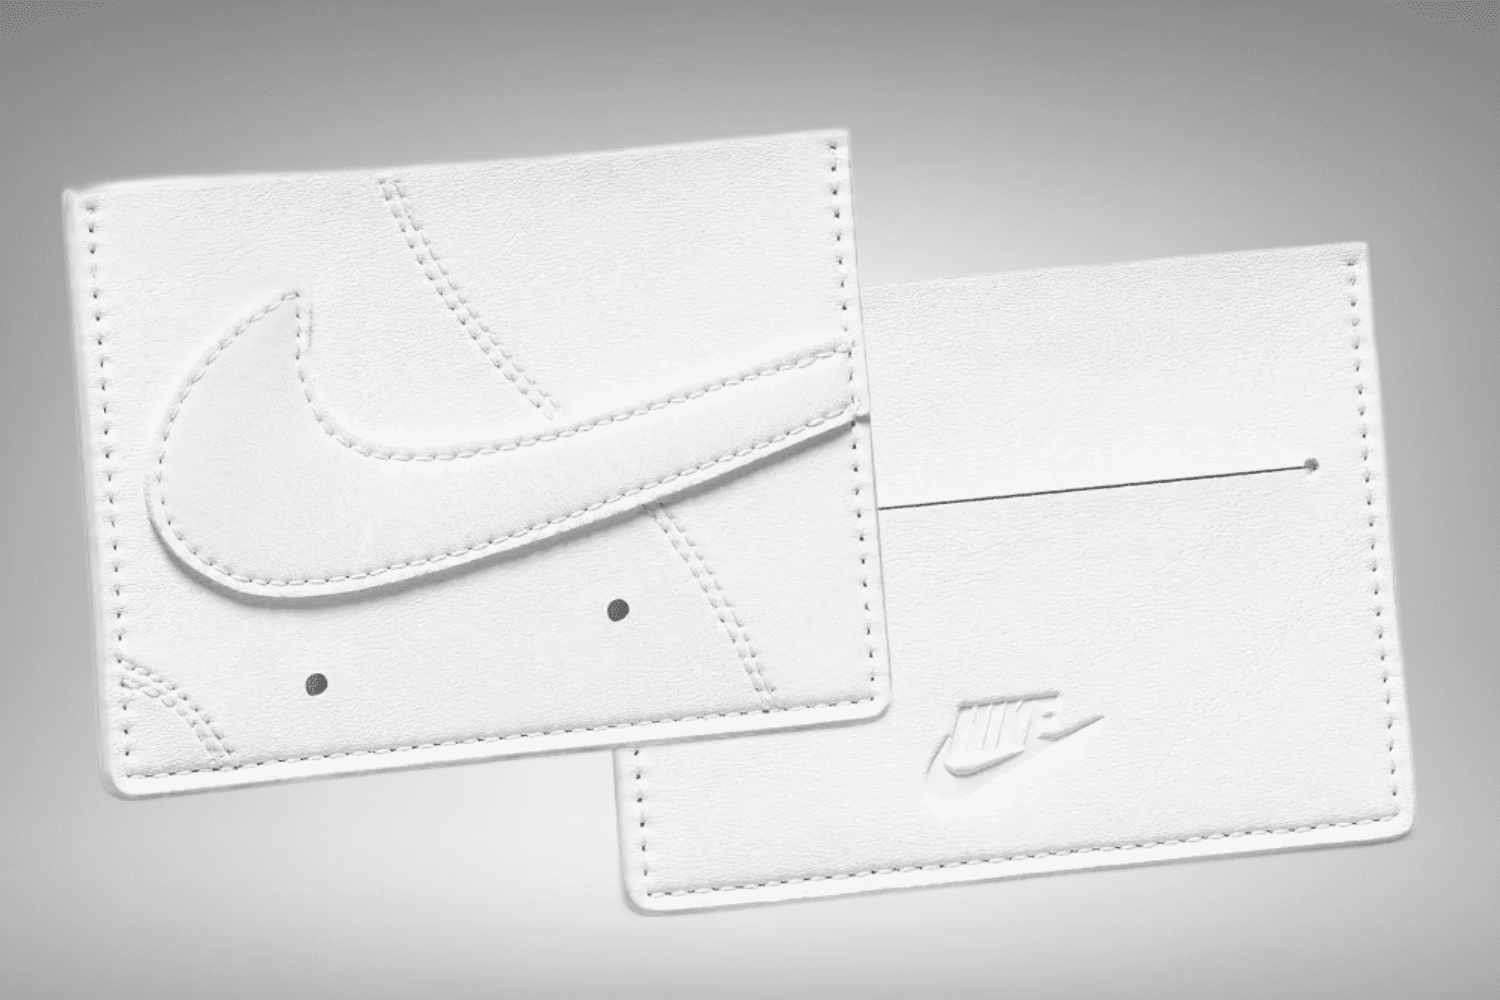 Diese Nike Wallets sind von ikonischen Sneaker Modellen inspiriert